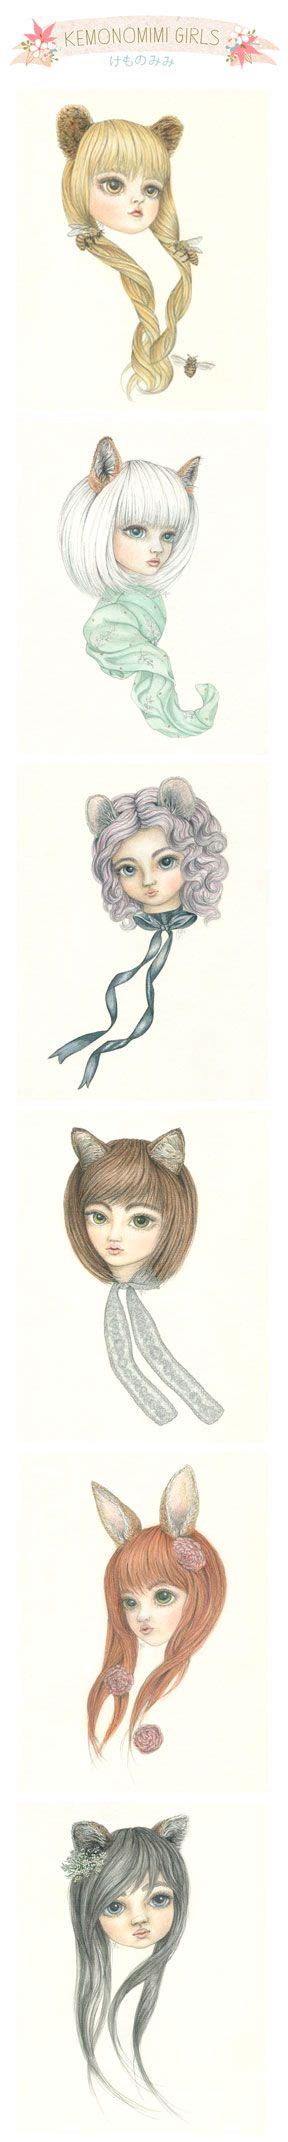 Kemonomimi Girls By Candacejean Kemonomimi Means Animal Ears In